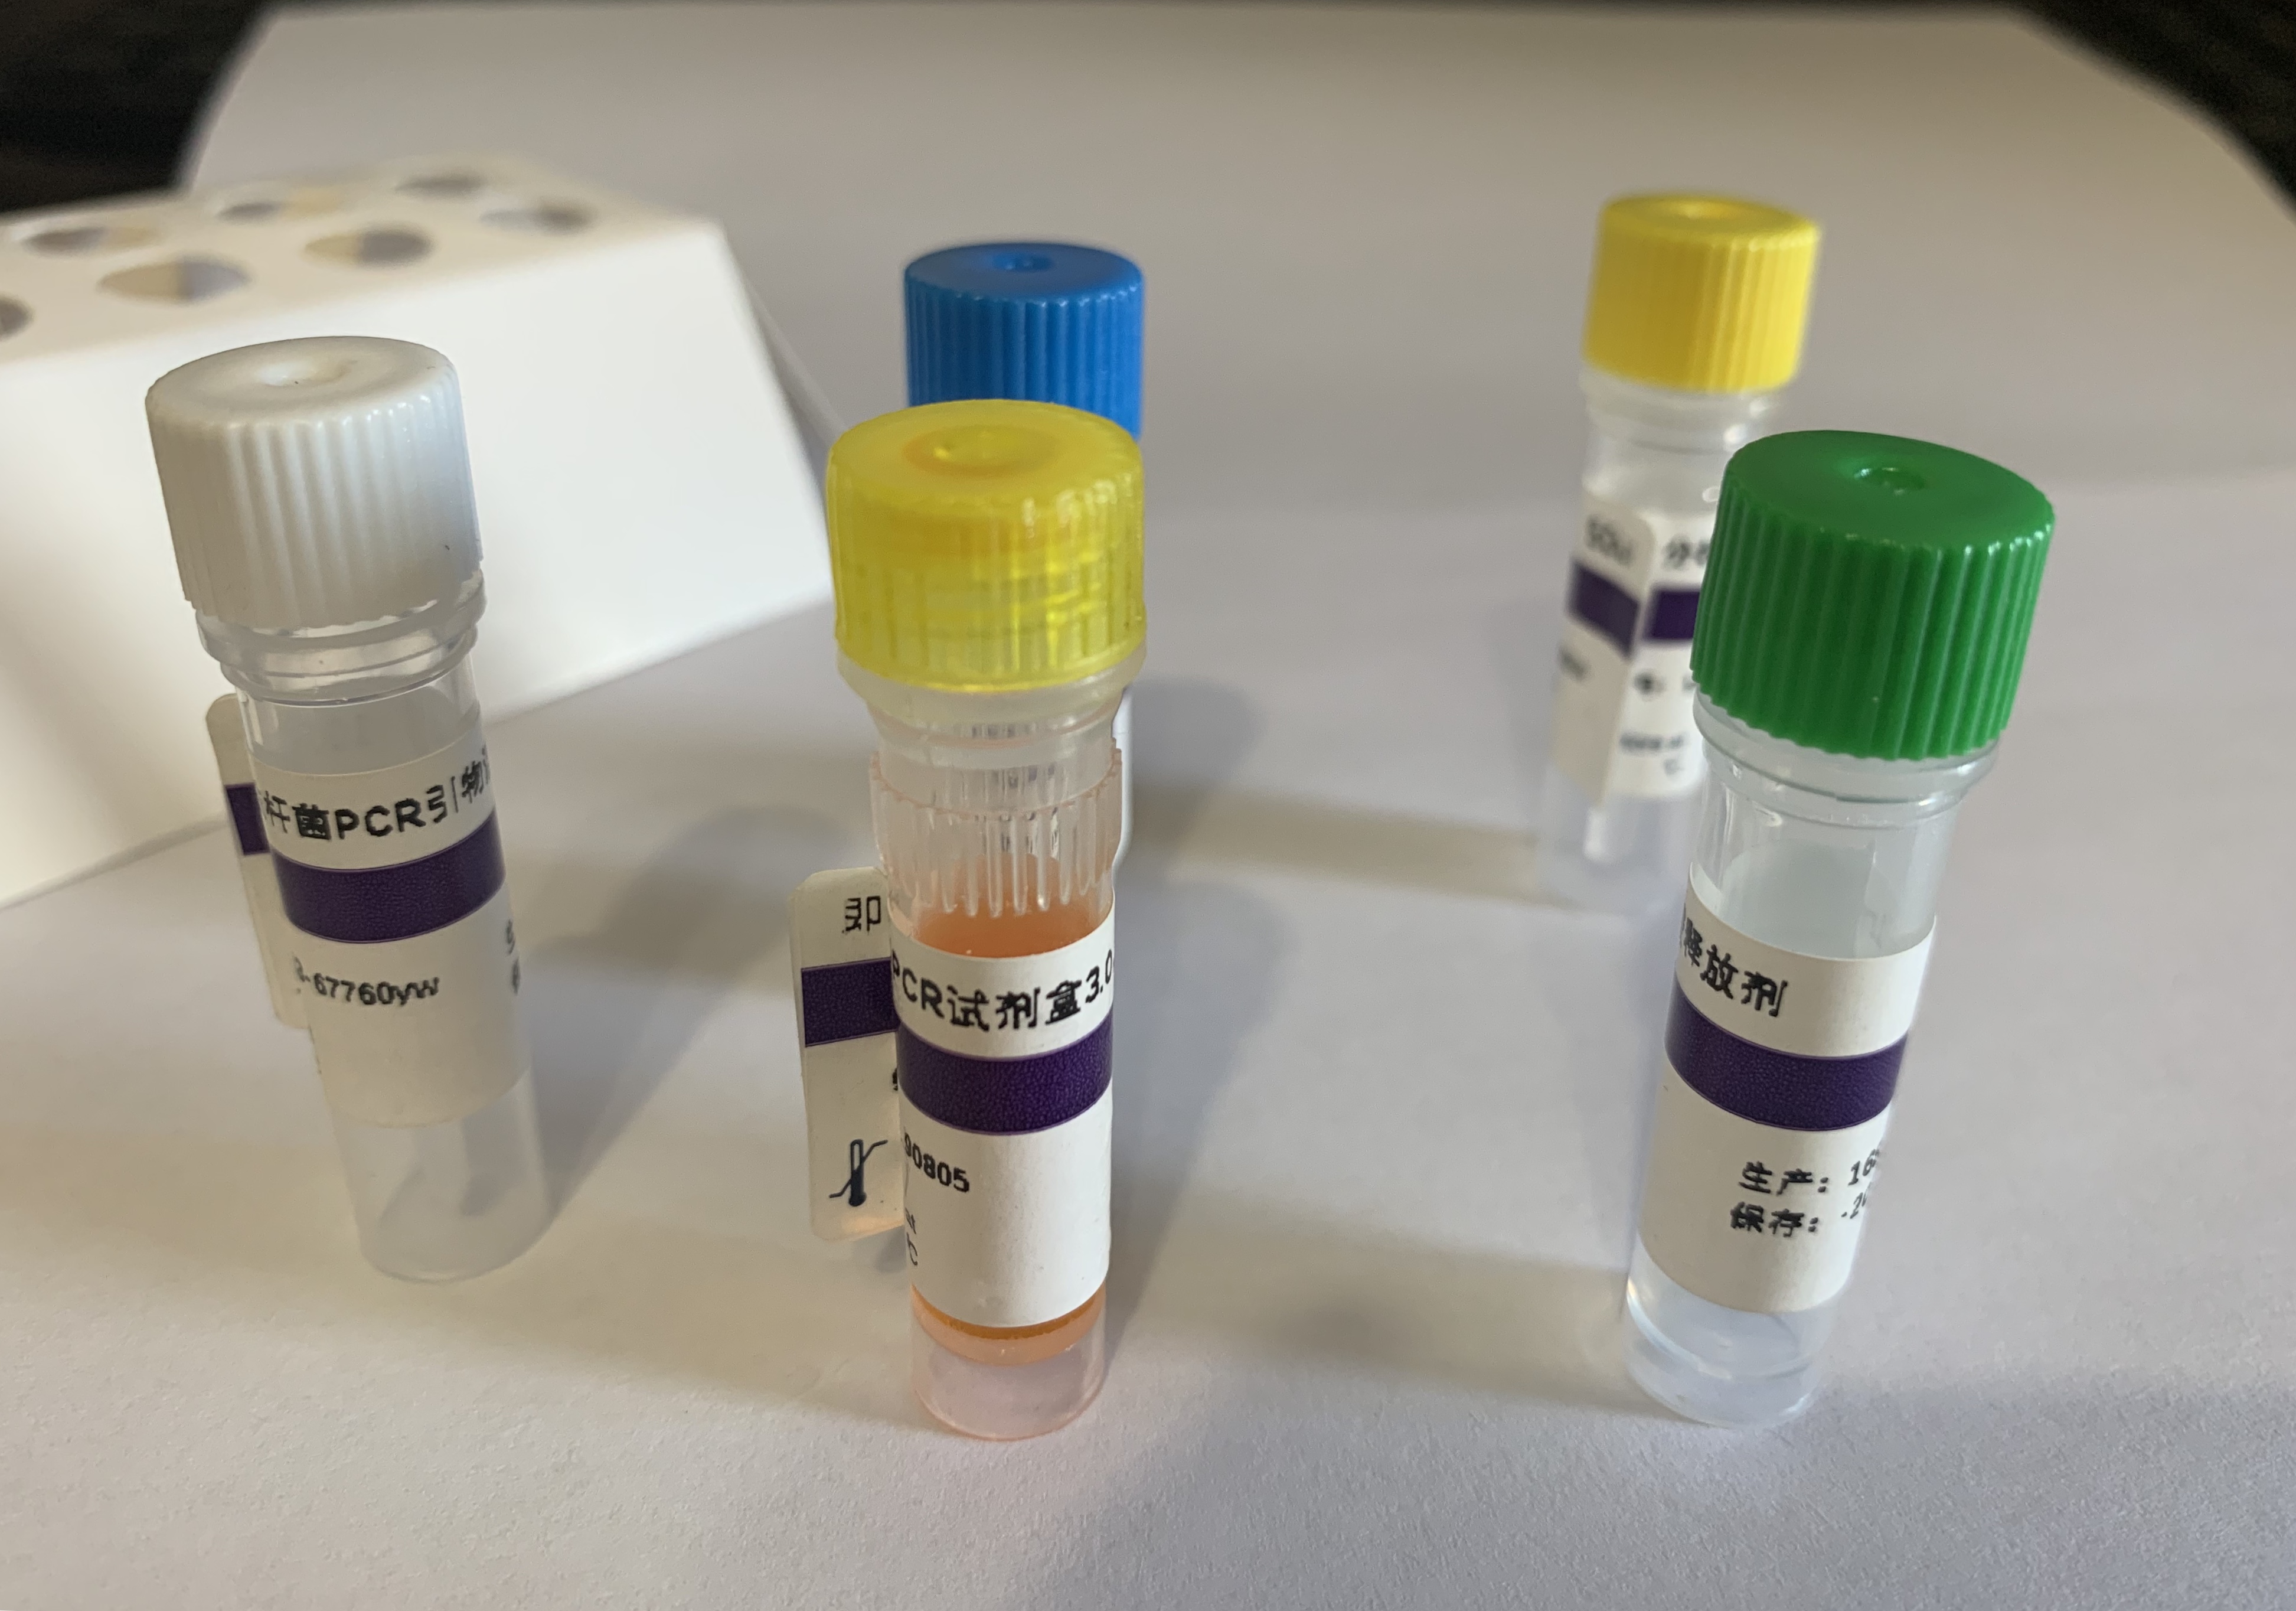 鸭肝炎病毒1型探针法荧光定量RT-PCR试剂盒